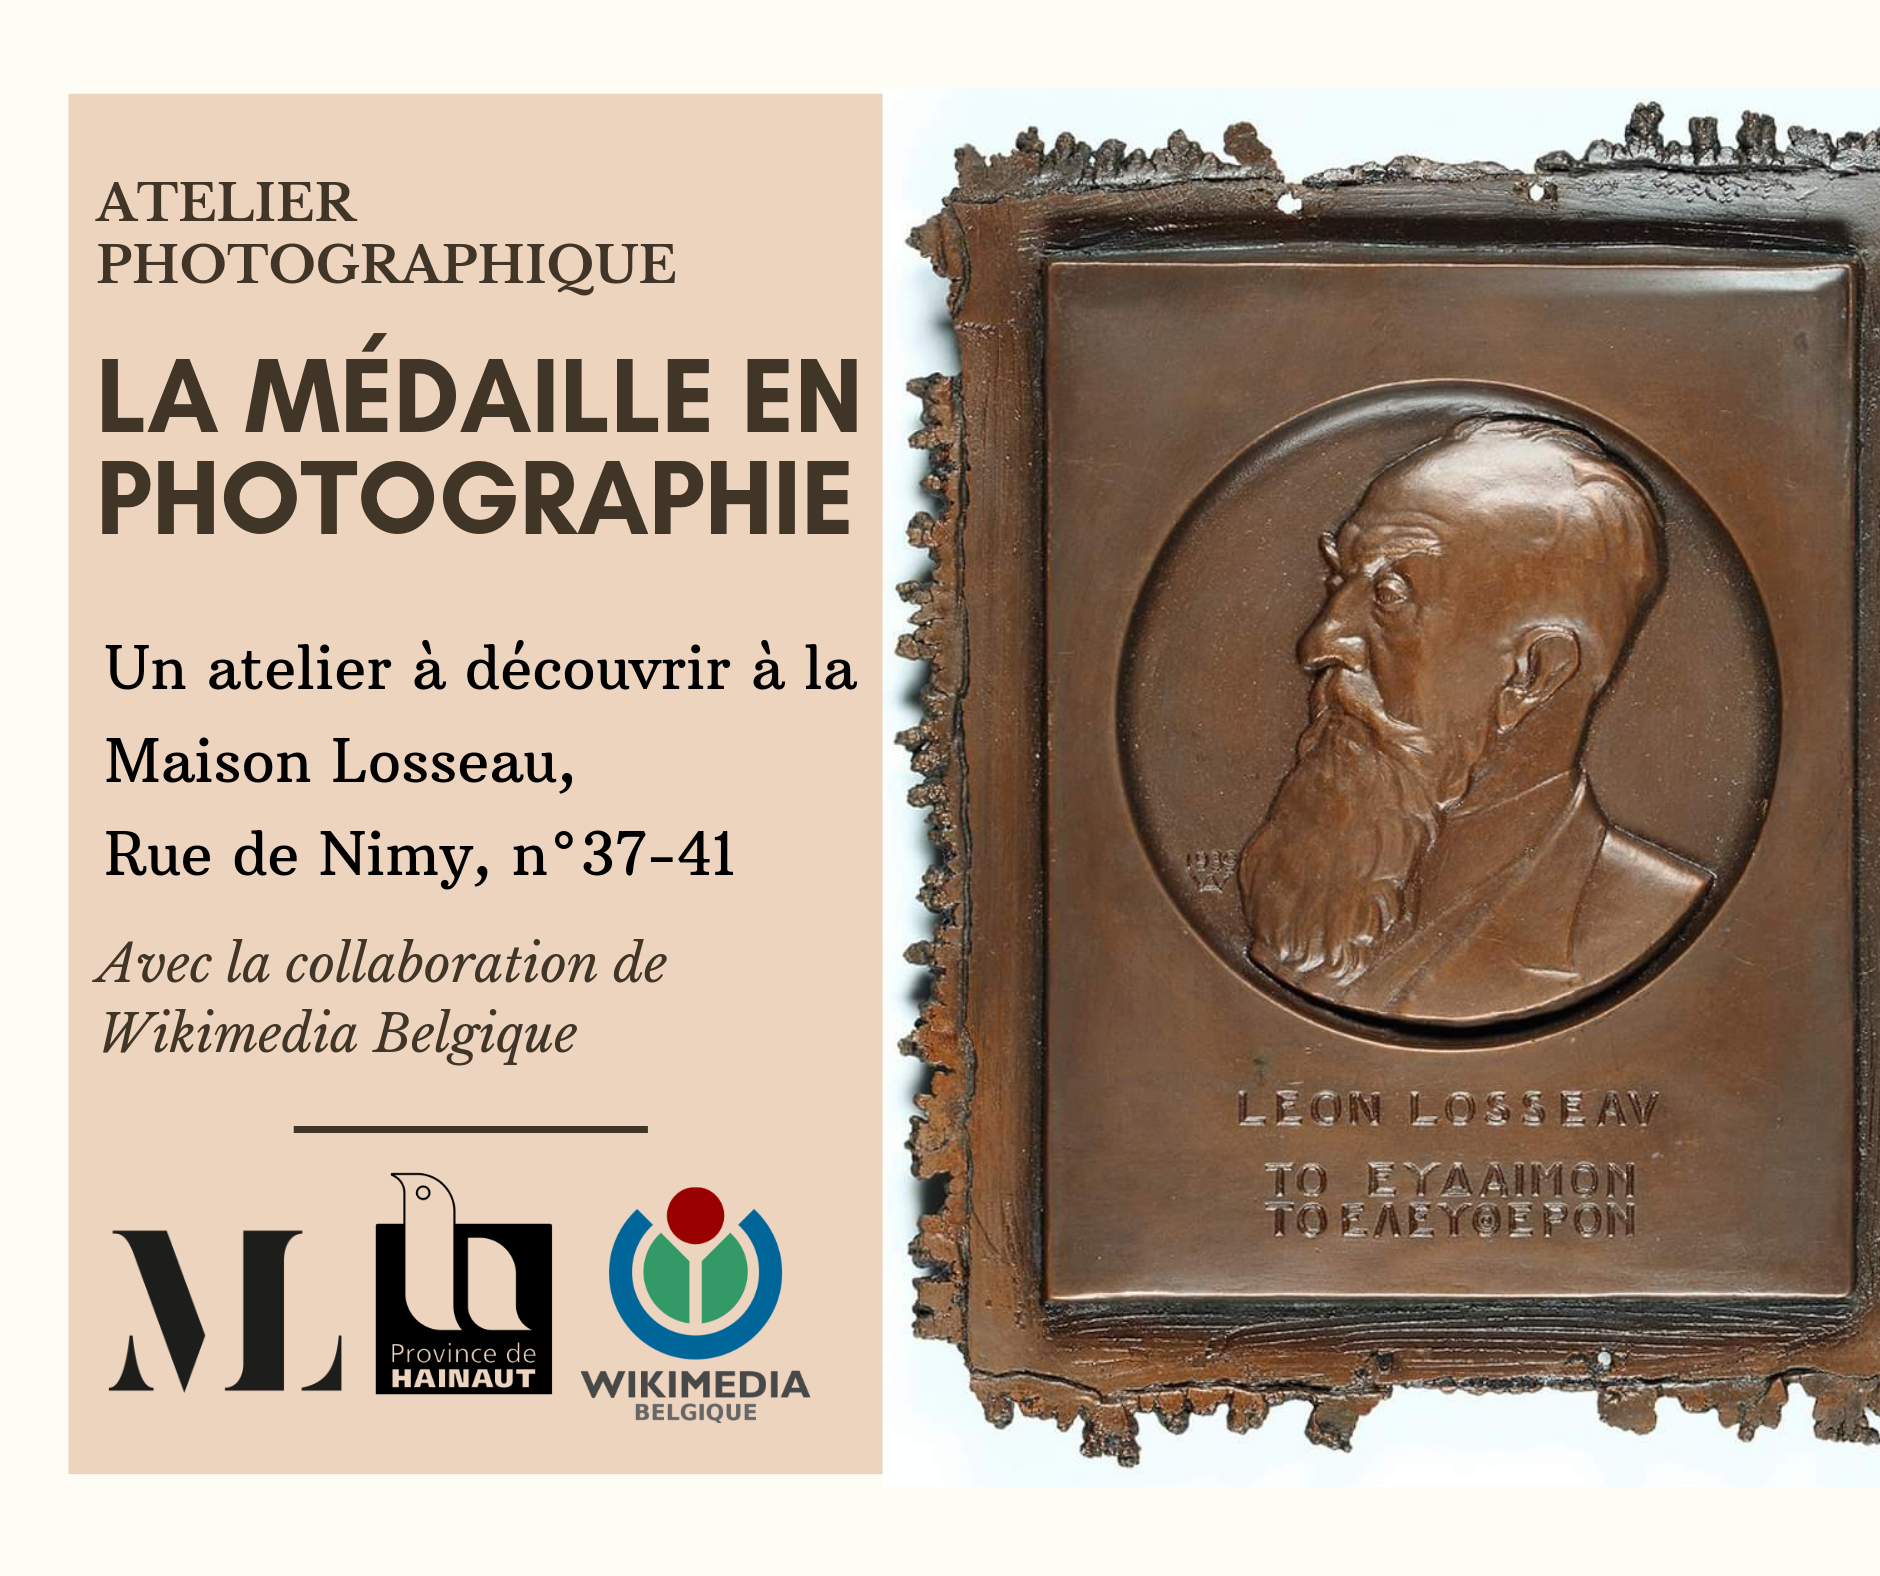 Visuel des ateliers photographiques Maison Losseau Wikimedia Belgium médaille